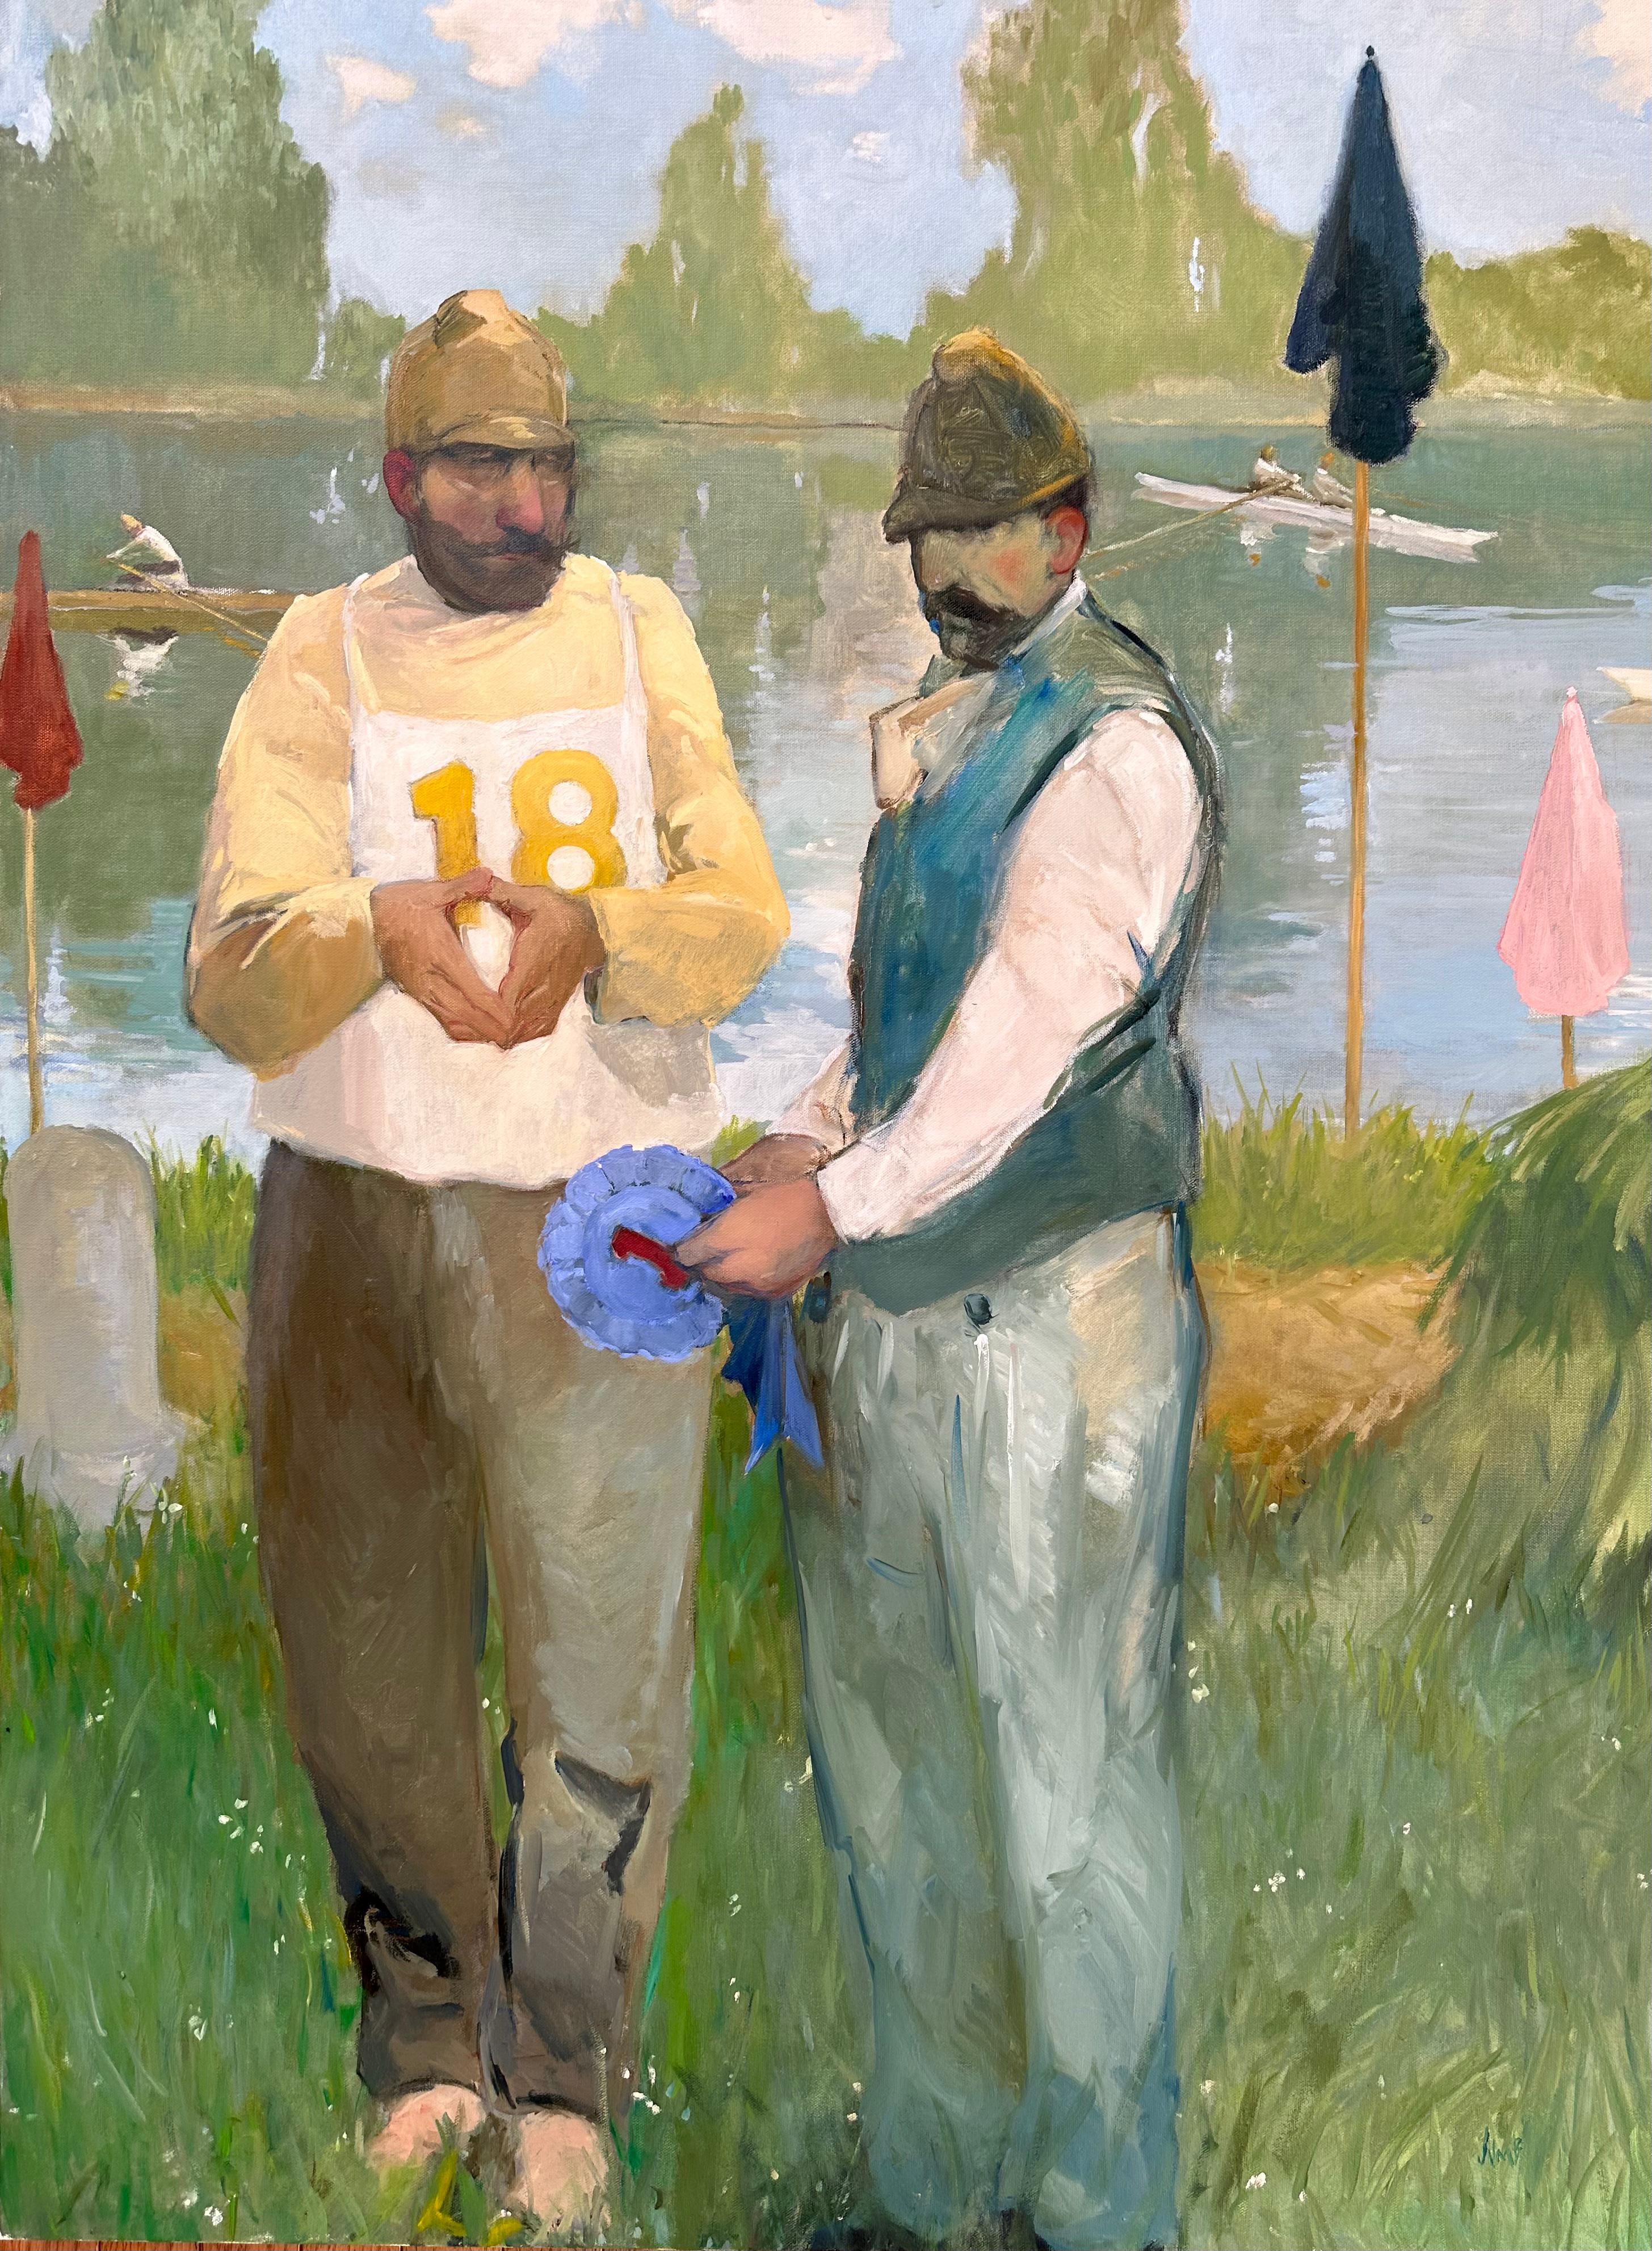 "The Regatta" Peinture à l'huile de deux hommes lors d'une course de bateaux, Impressionnisme, bord de lac